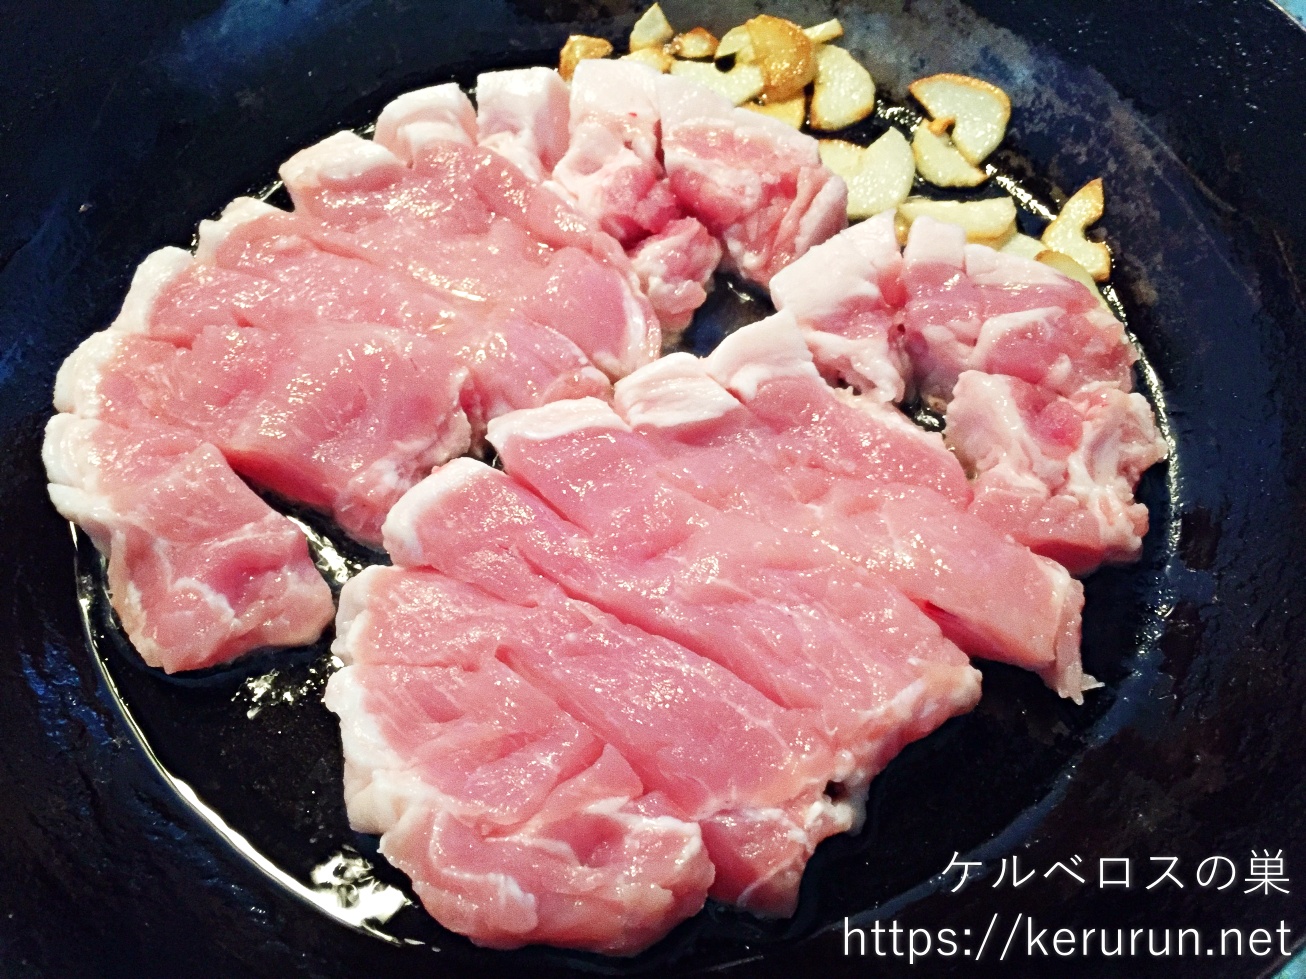 コストコの豚ロースとんかつ用厚切り肉でトンテキ定食の晩ごはん - ケルベロスの巣